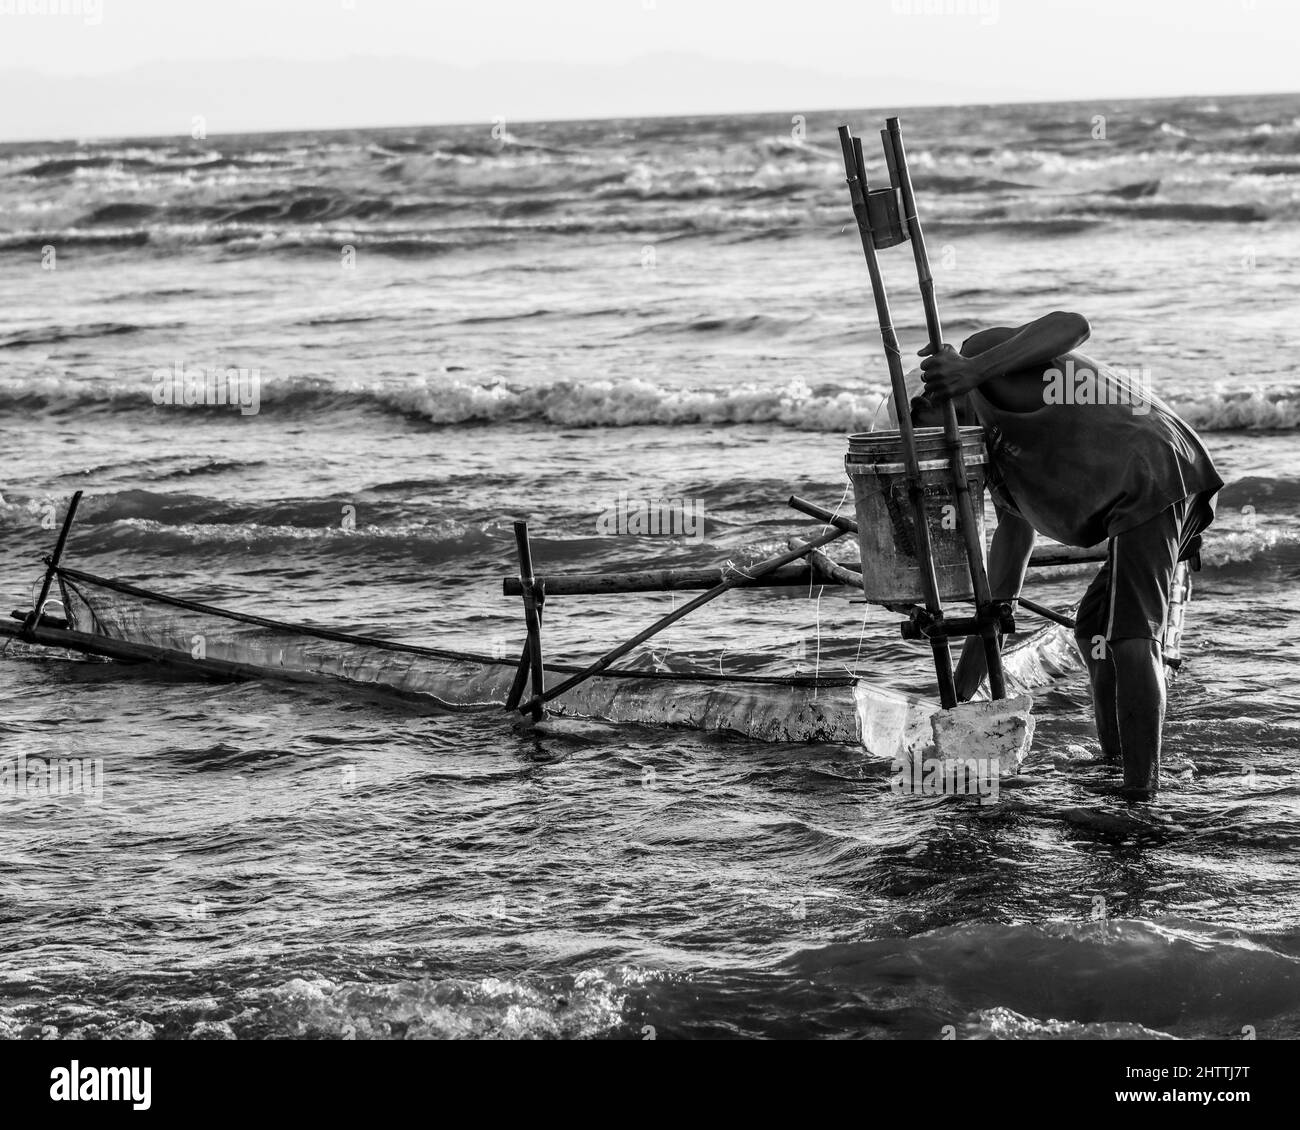 Photo noir et blanc d'un pêcheur qui tente de pêcher dans l'eau Banque D'Images